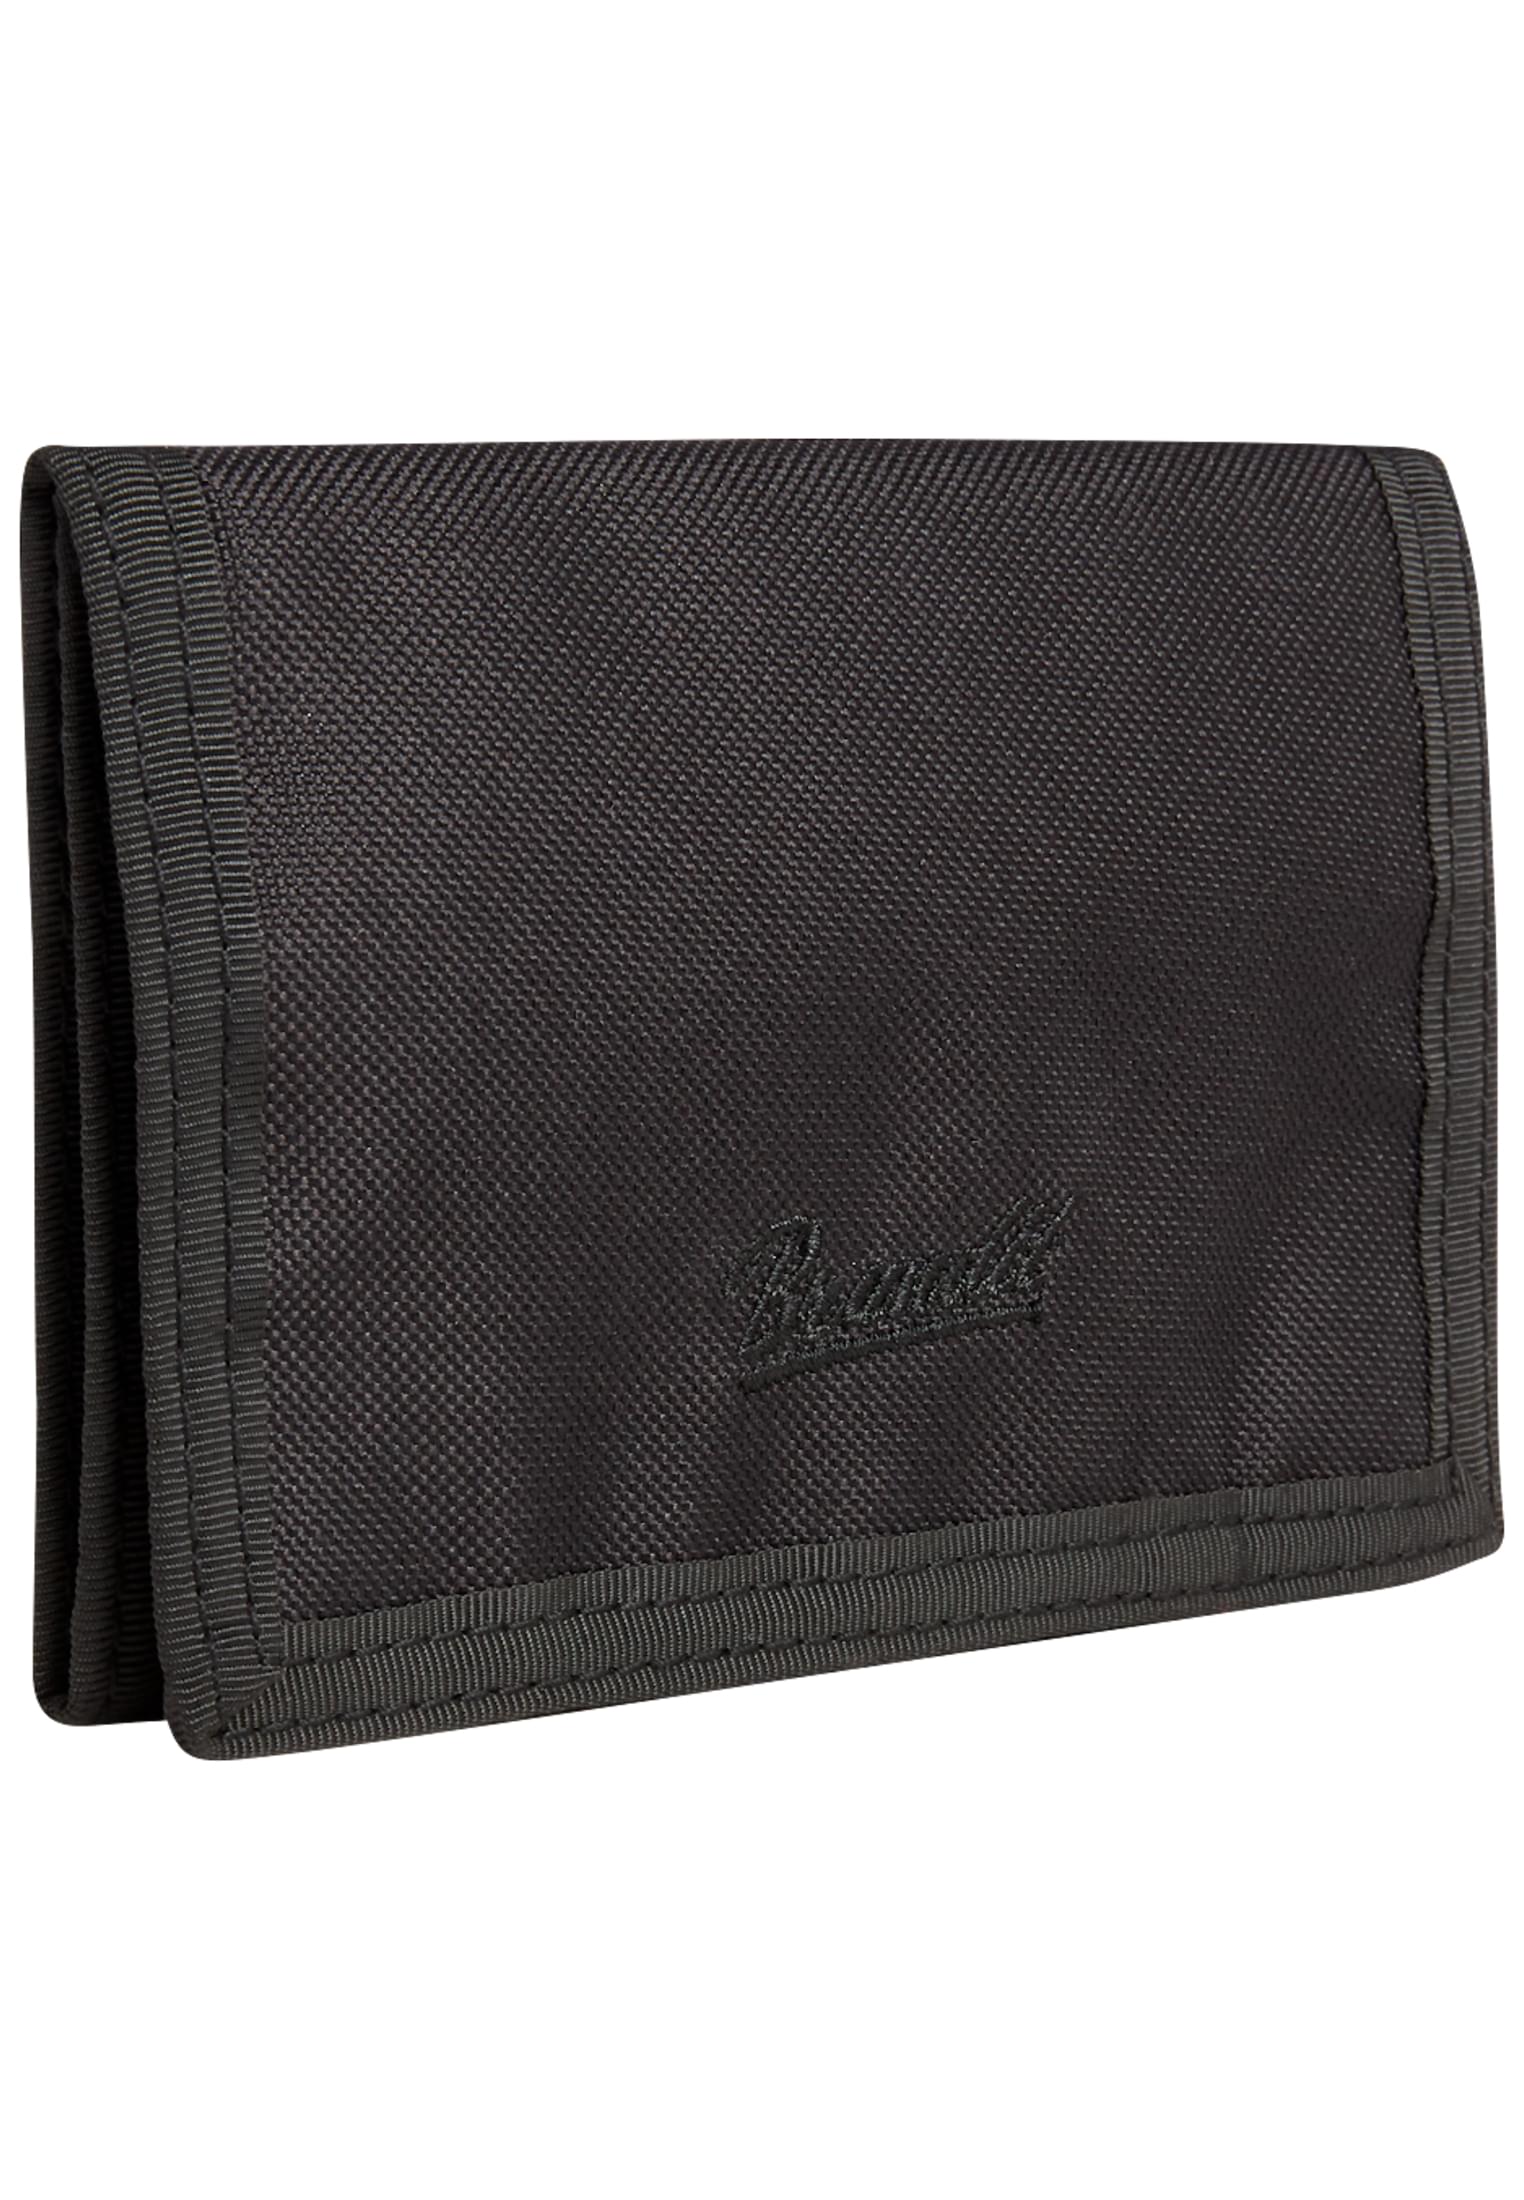 Taschen Wallet Three in Farbe black